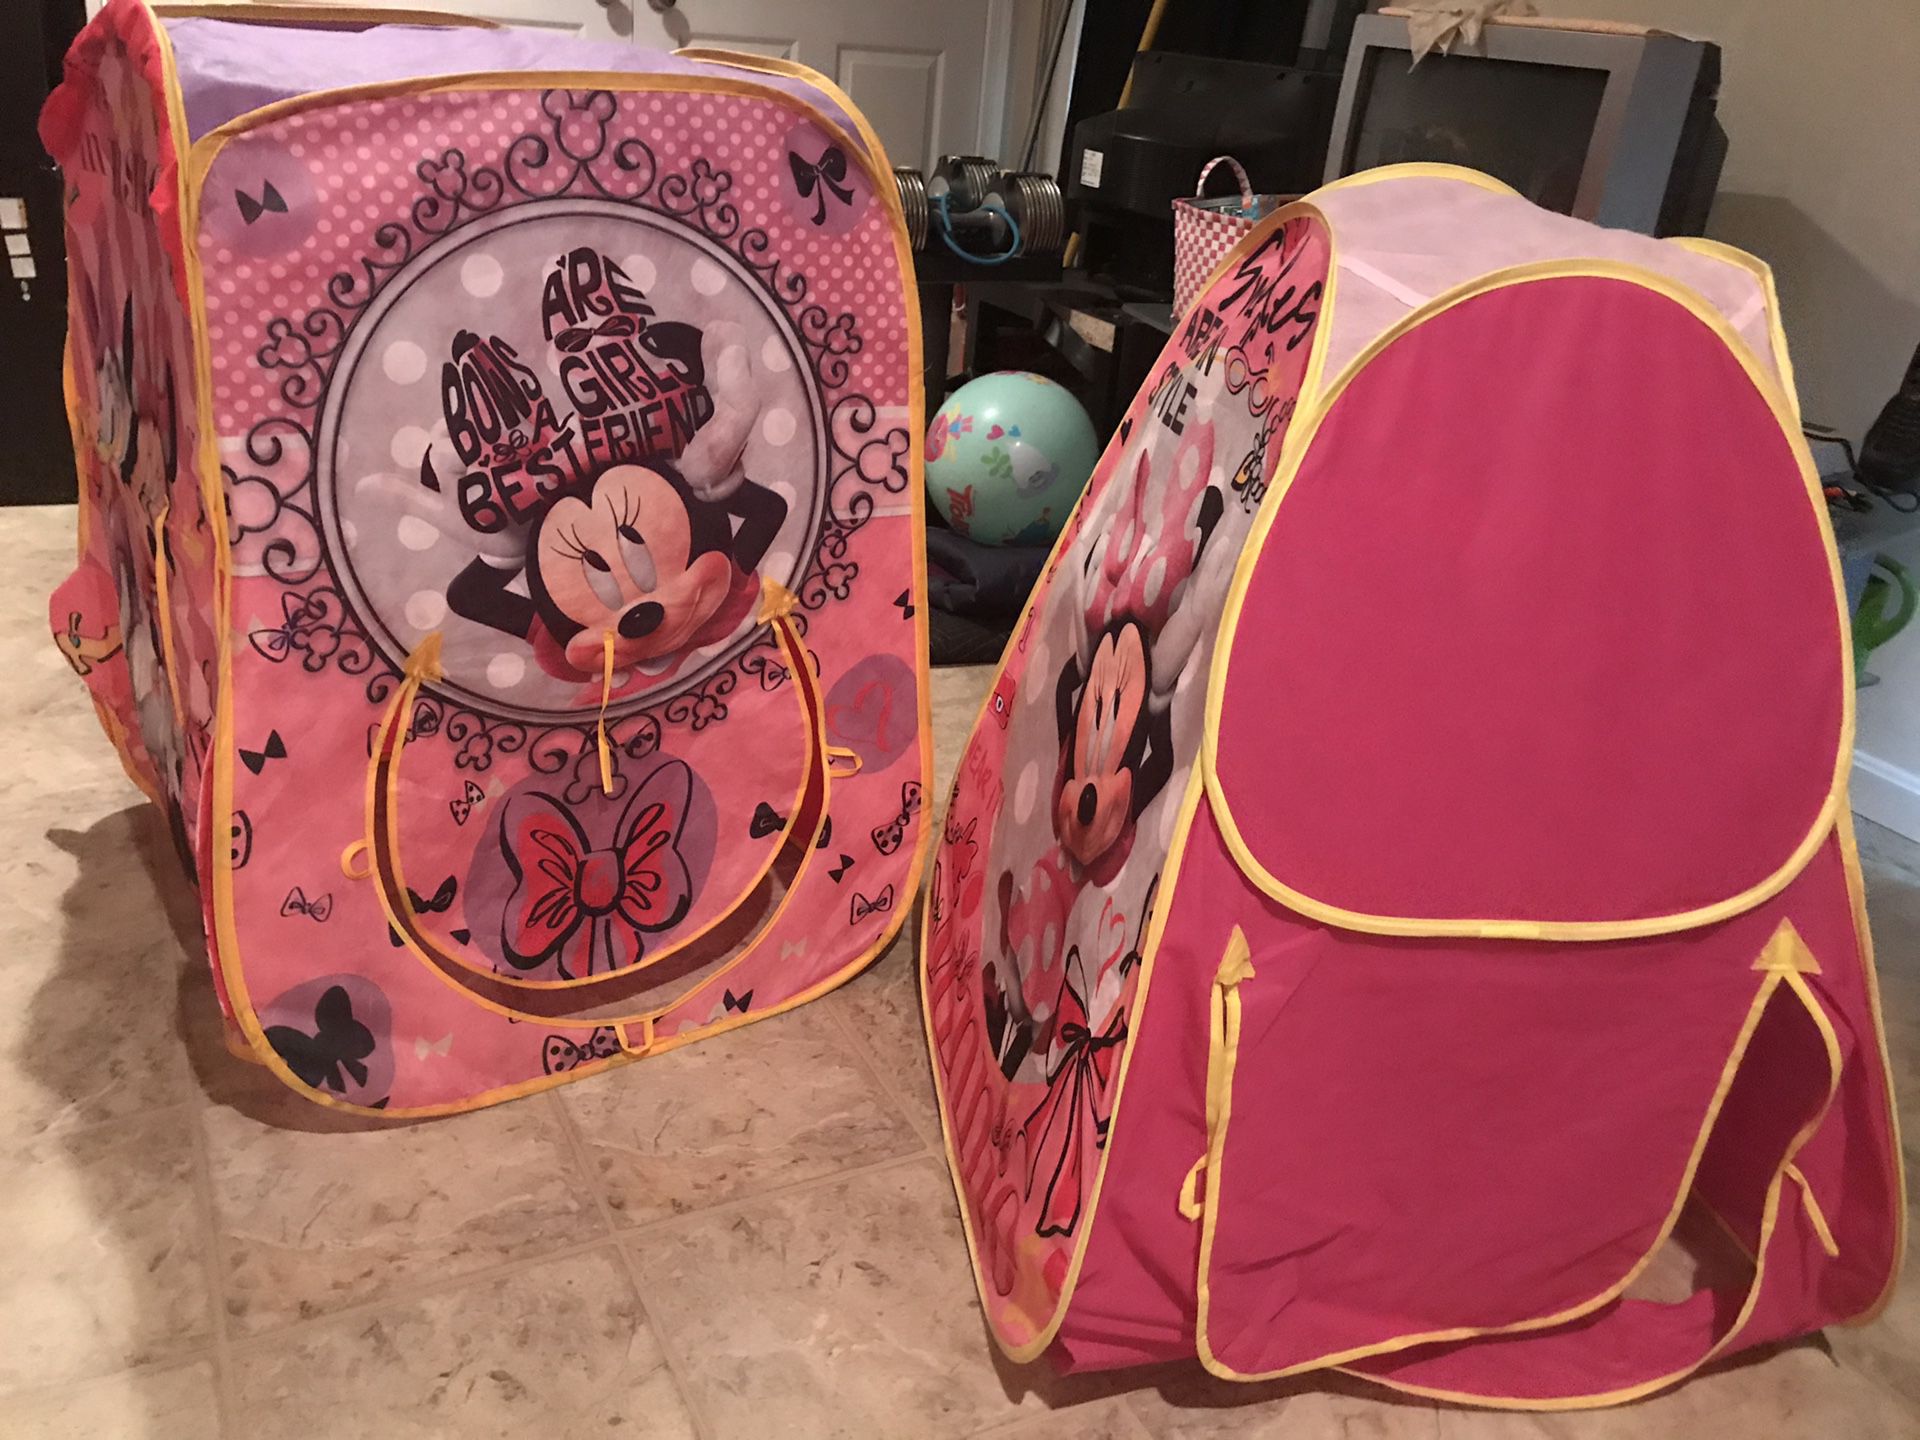 Minnie pop up tent